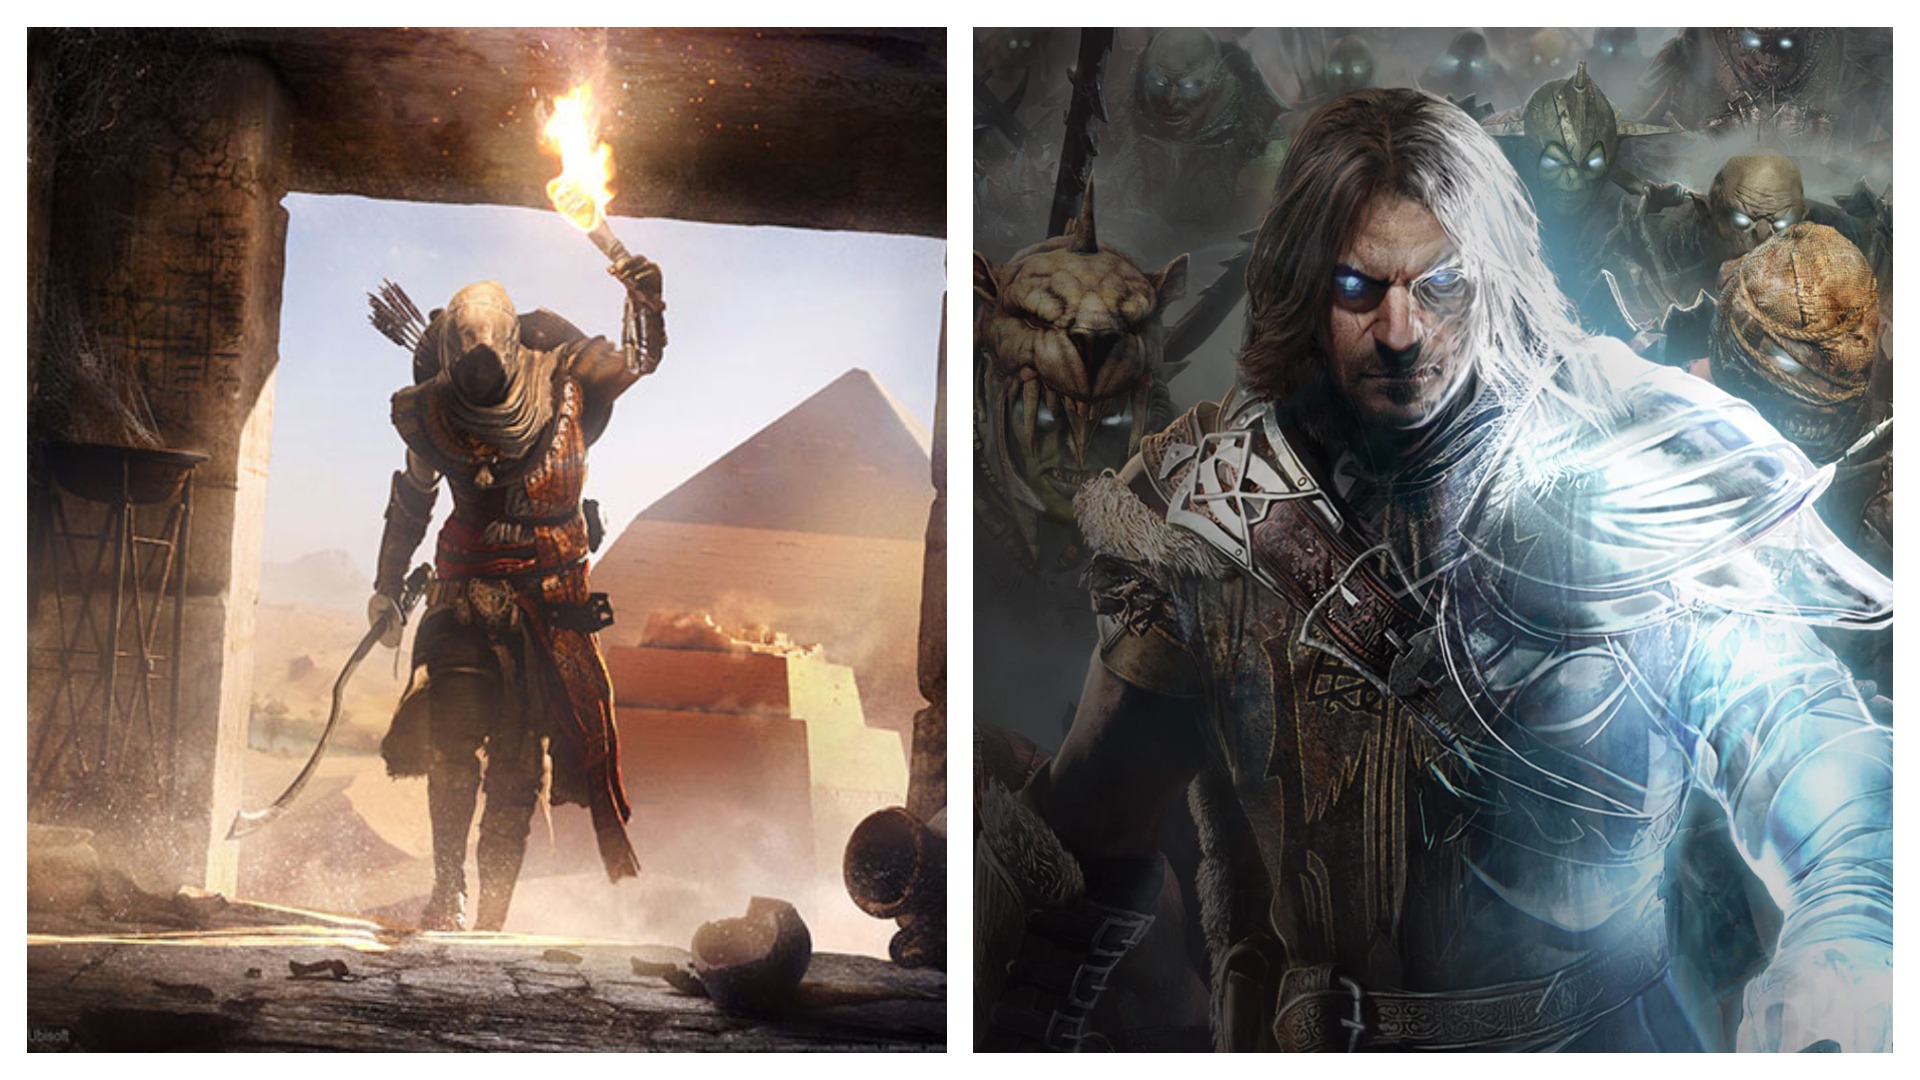 Imagem mostra pôsteres de Assassin's Creed Origins e Middle-earth: Shadow of Mordor, dois dos jogos supostamente gratuitos em setembro pela plataforma Prime Gaming da Amazon